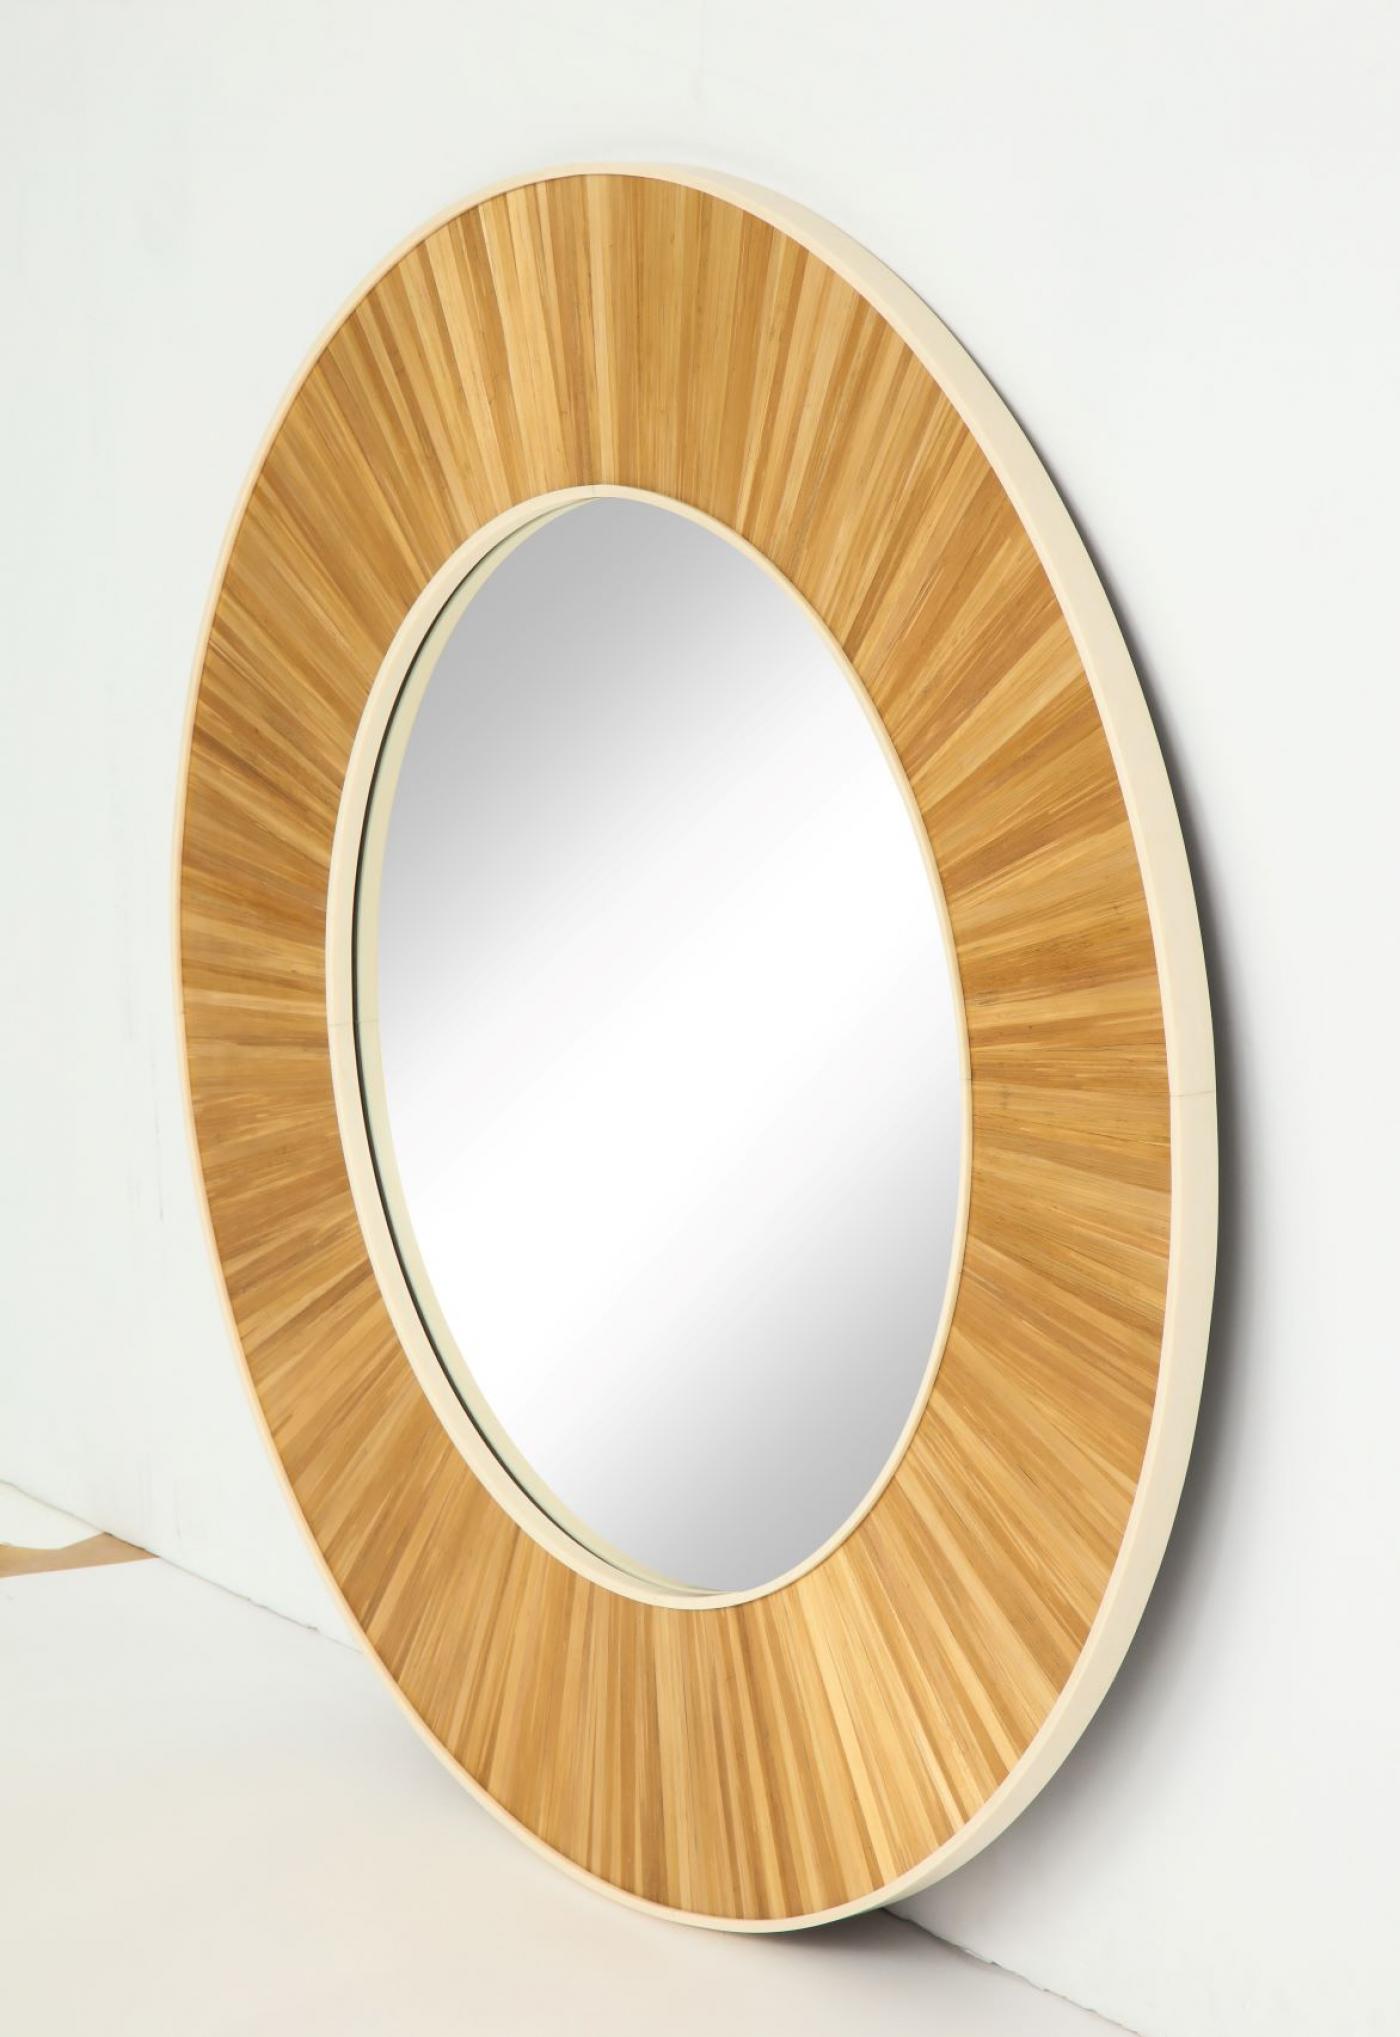 Modernist round mirror